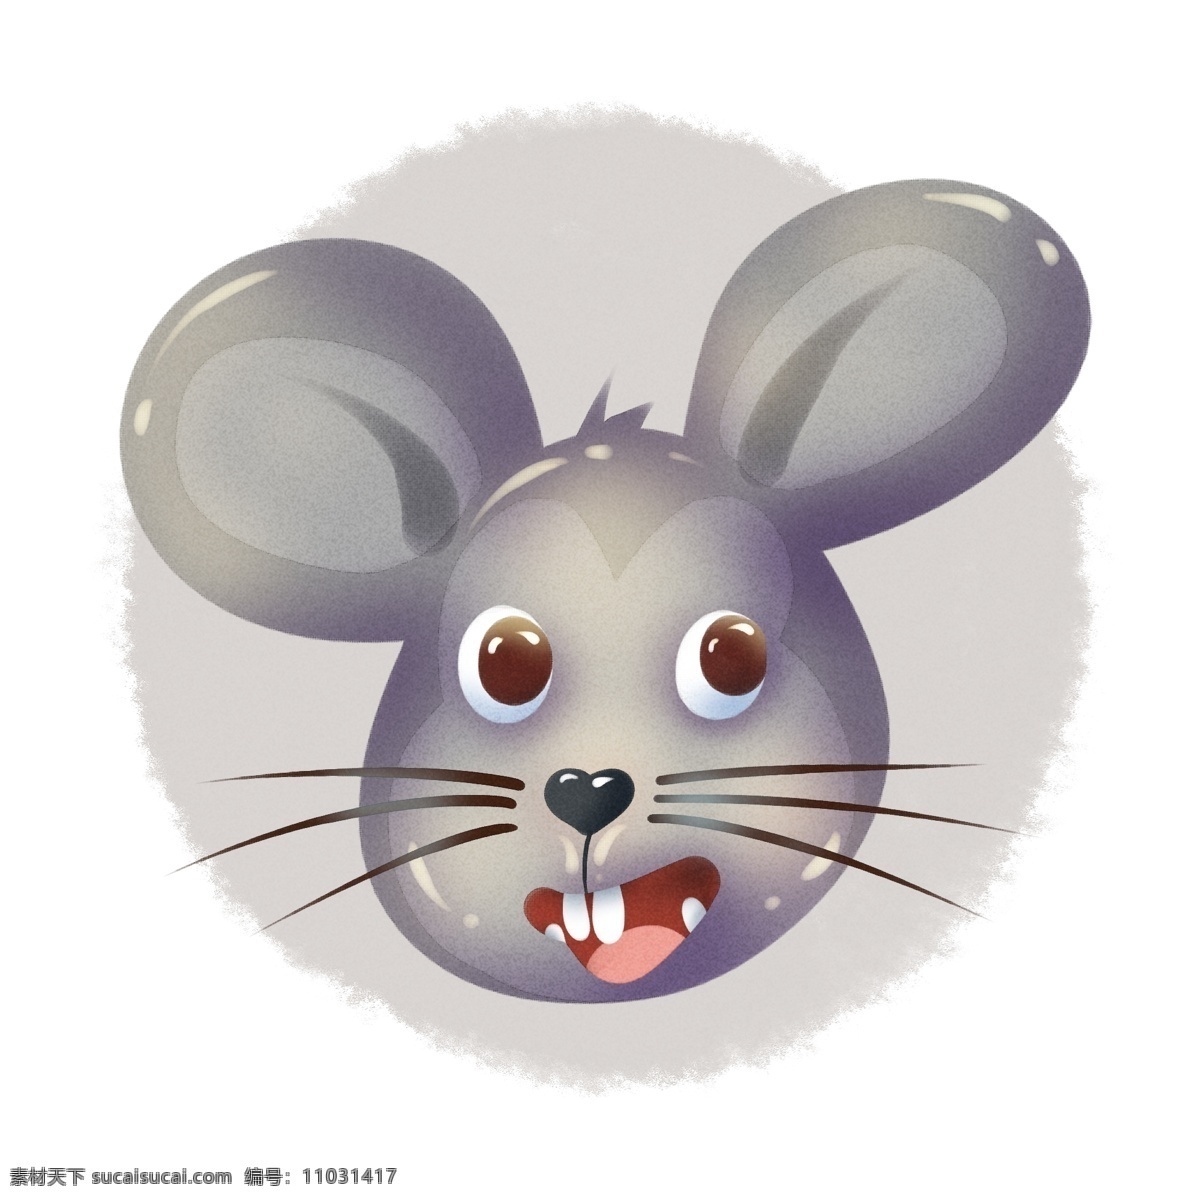 卡通老鼠图片 老鼠 卡通老鼠 手绘老鼠 老鼠插画 老鼠图标 可爱老鼠 鼠年 鼠年素材 可爱小老鼠 小老鼠 吃奶酪的老鼠 鼠年大吉 卡通插画图标 卡通设计